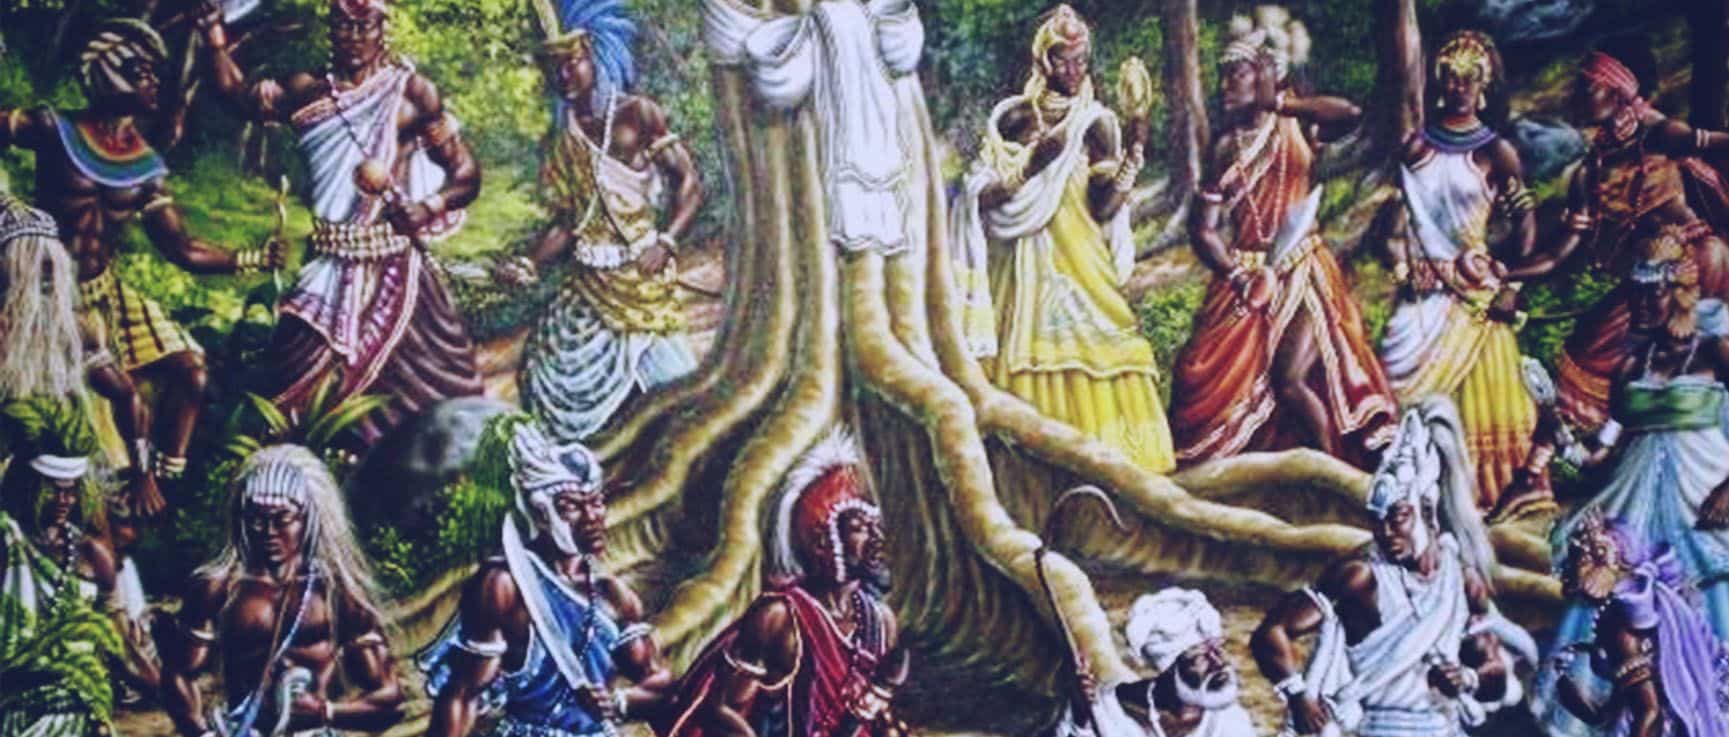 Mitologia Africana - A história do surgimento dos orixás